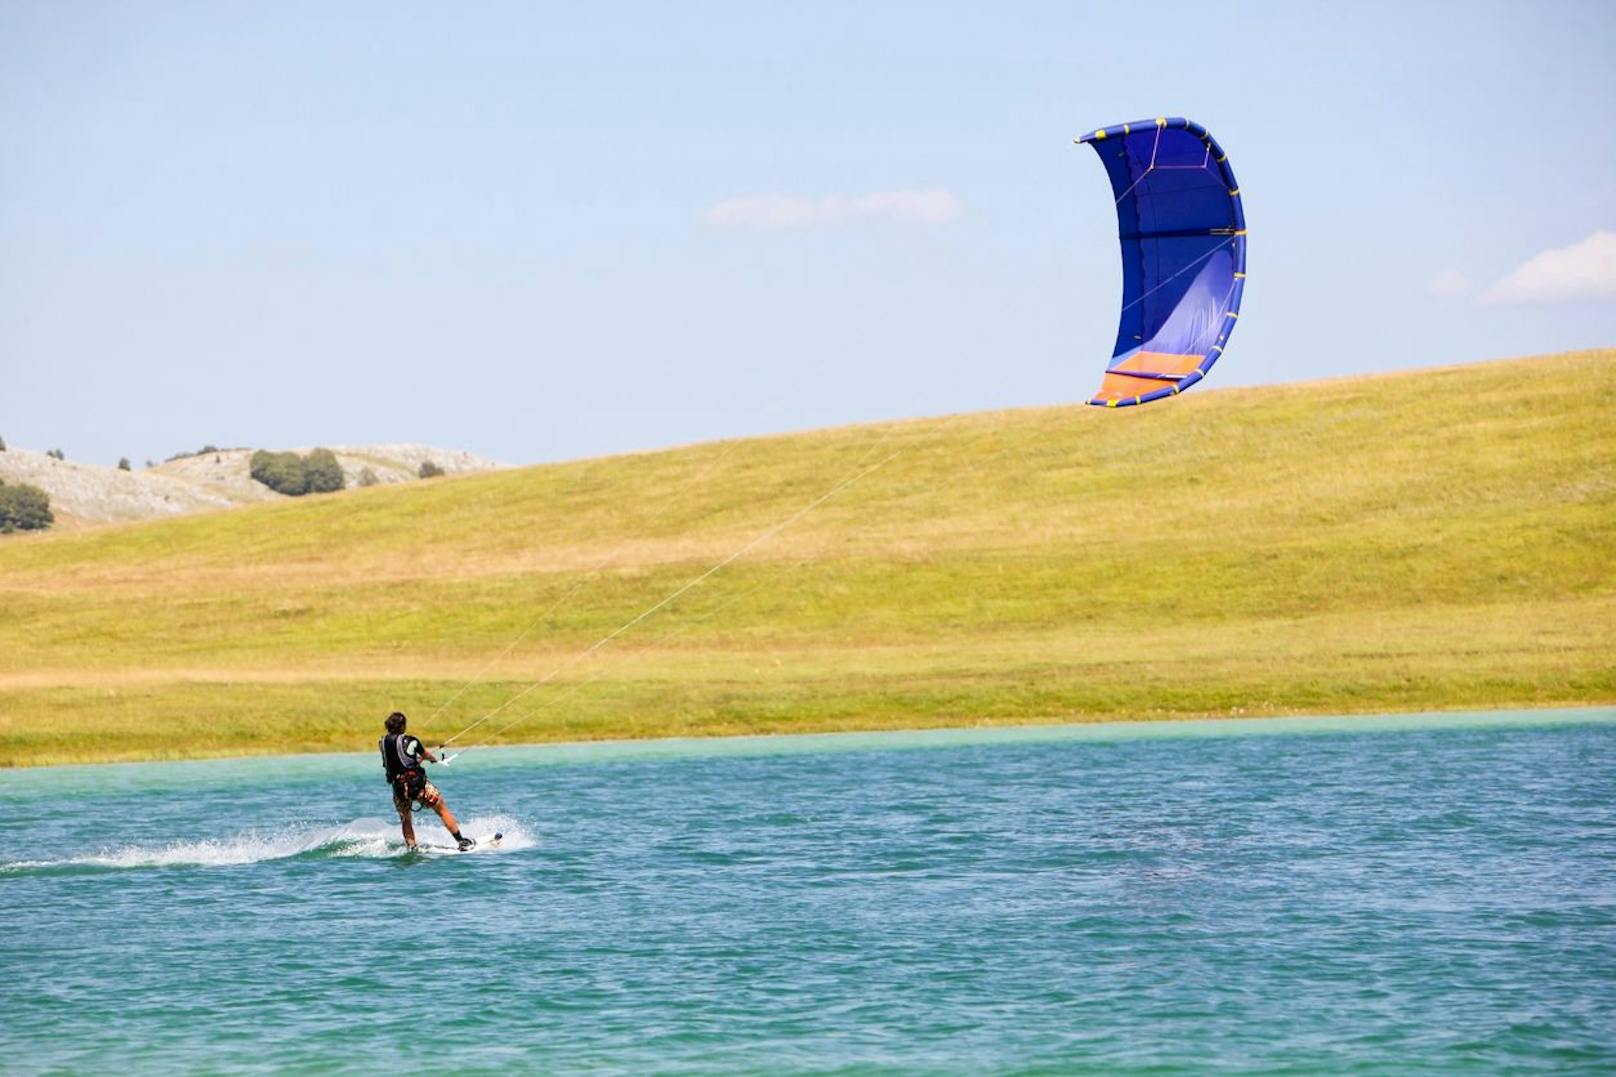 Heftige Windböen – Kitesurferin auf Wiese geschleudert